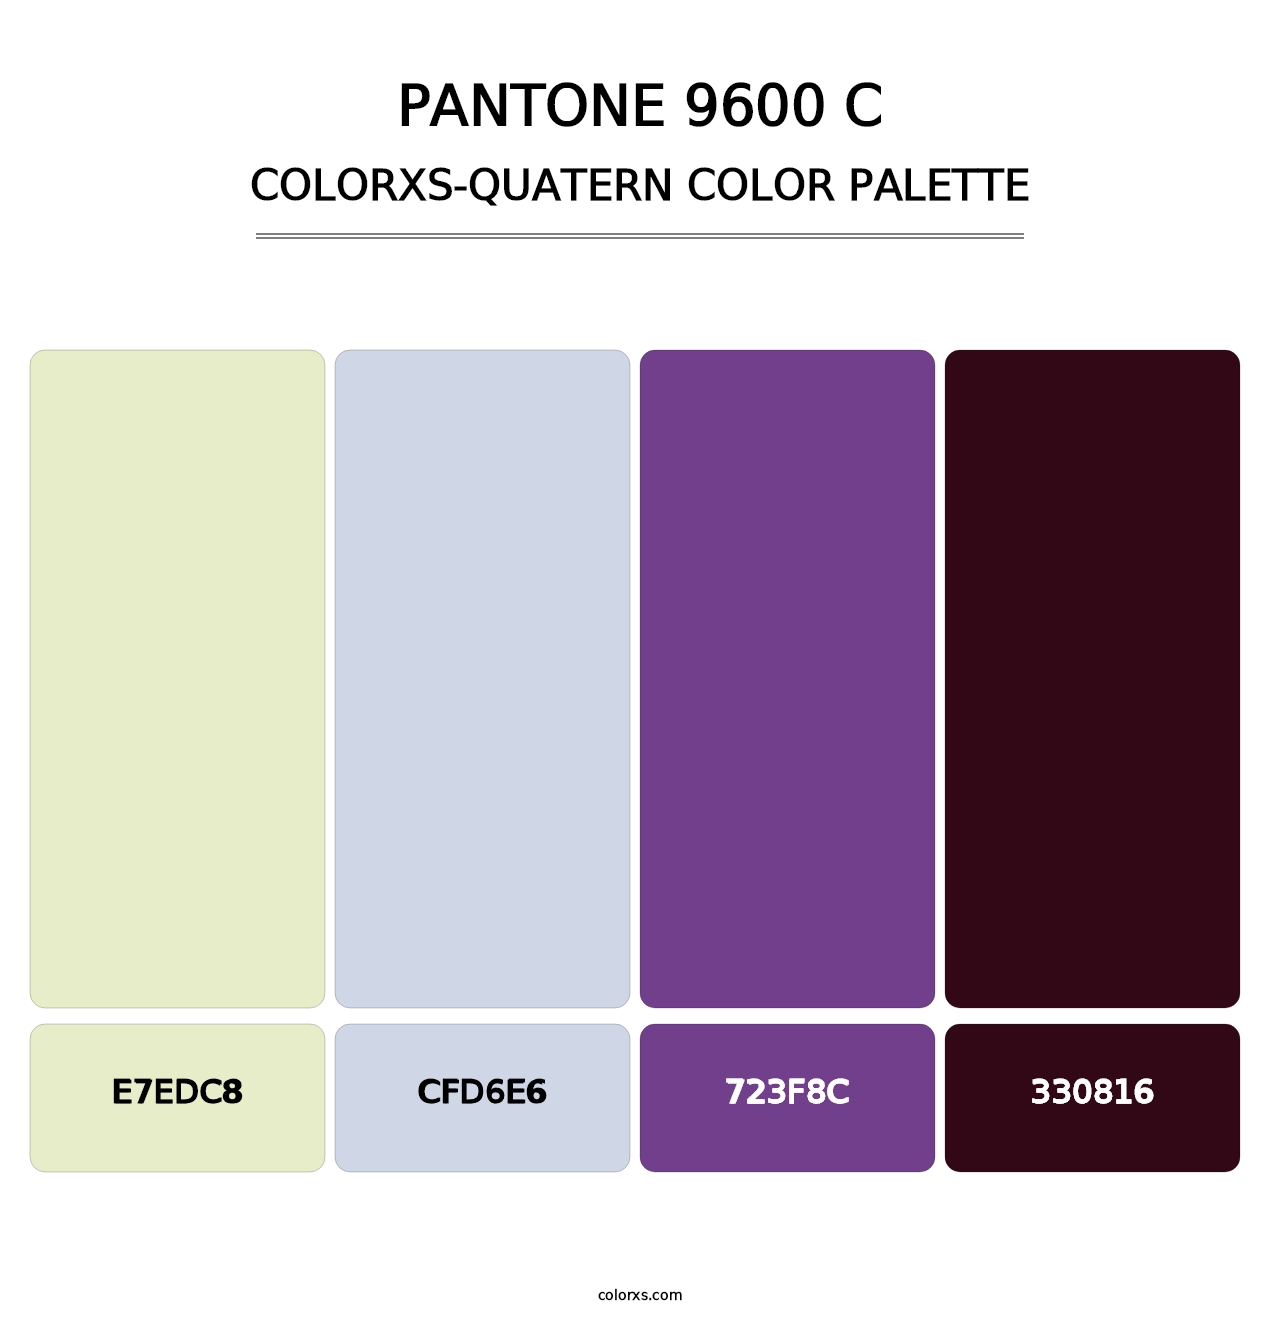 PANTONE 9600 C - Colorxs Quatern Palette